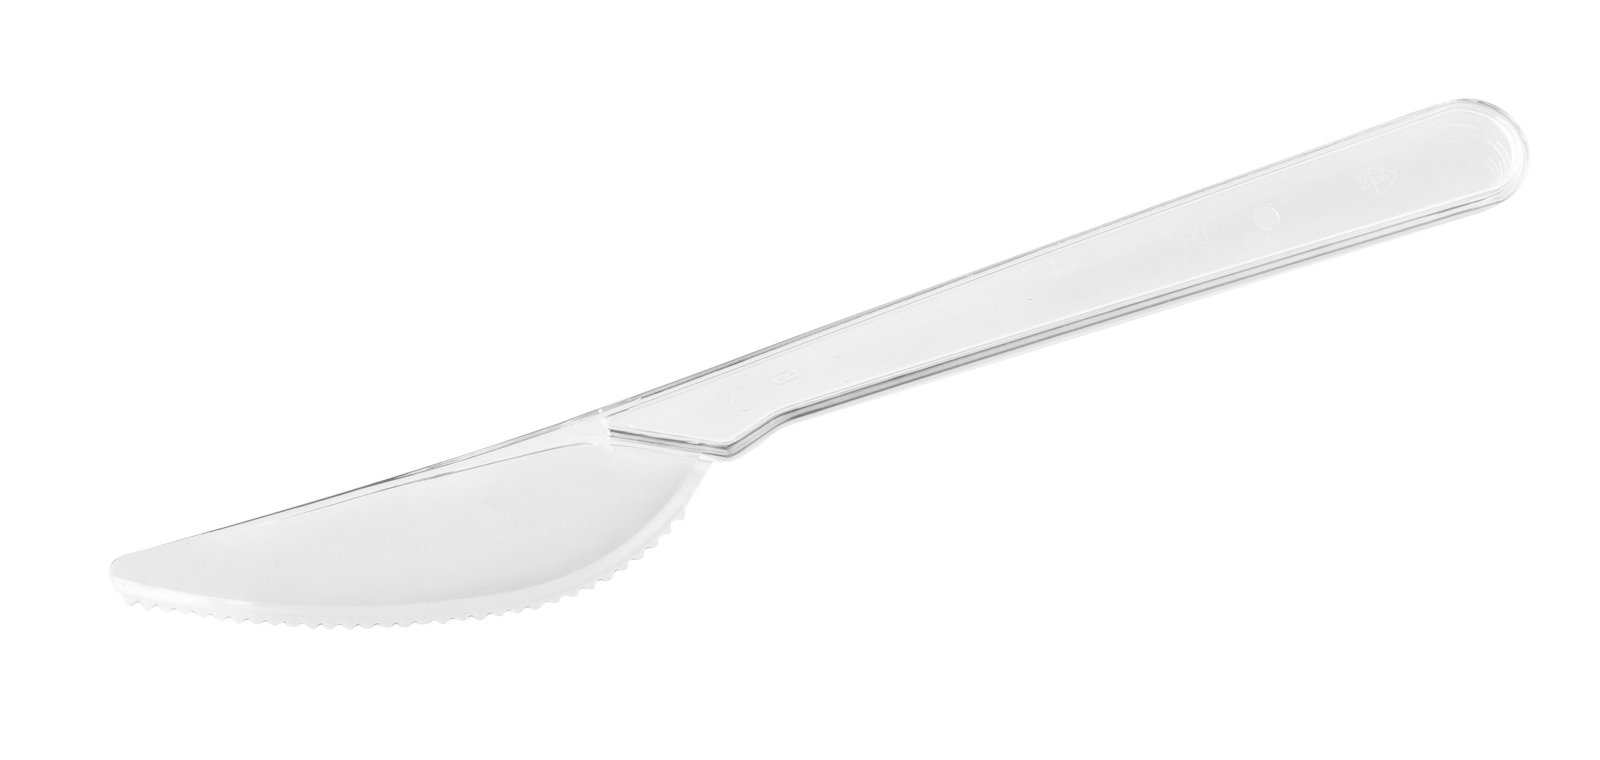 Нож столовый Компакт одноразовый, выполнен из кристаллического прозрачного полистирола. Подходит для употребления как горячих, так и холодных продуктов. Длина 180 мм. В упаковке - 50 штук, в коробке - 2000 штук.